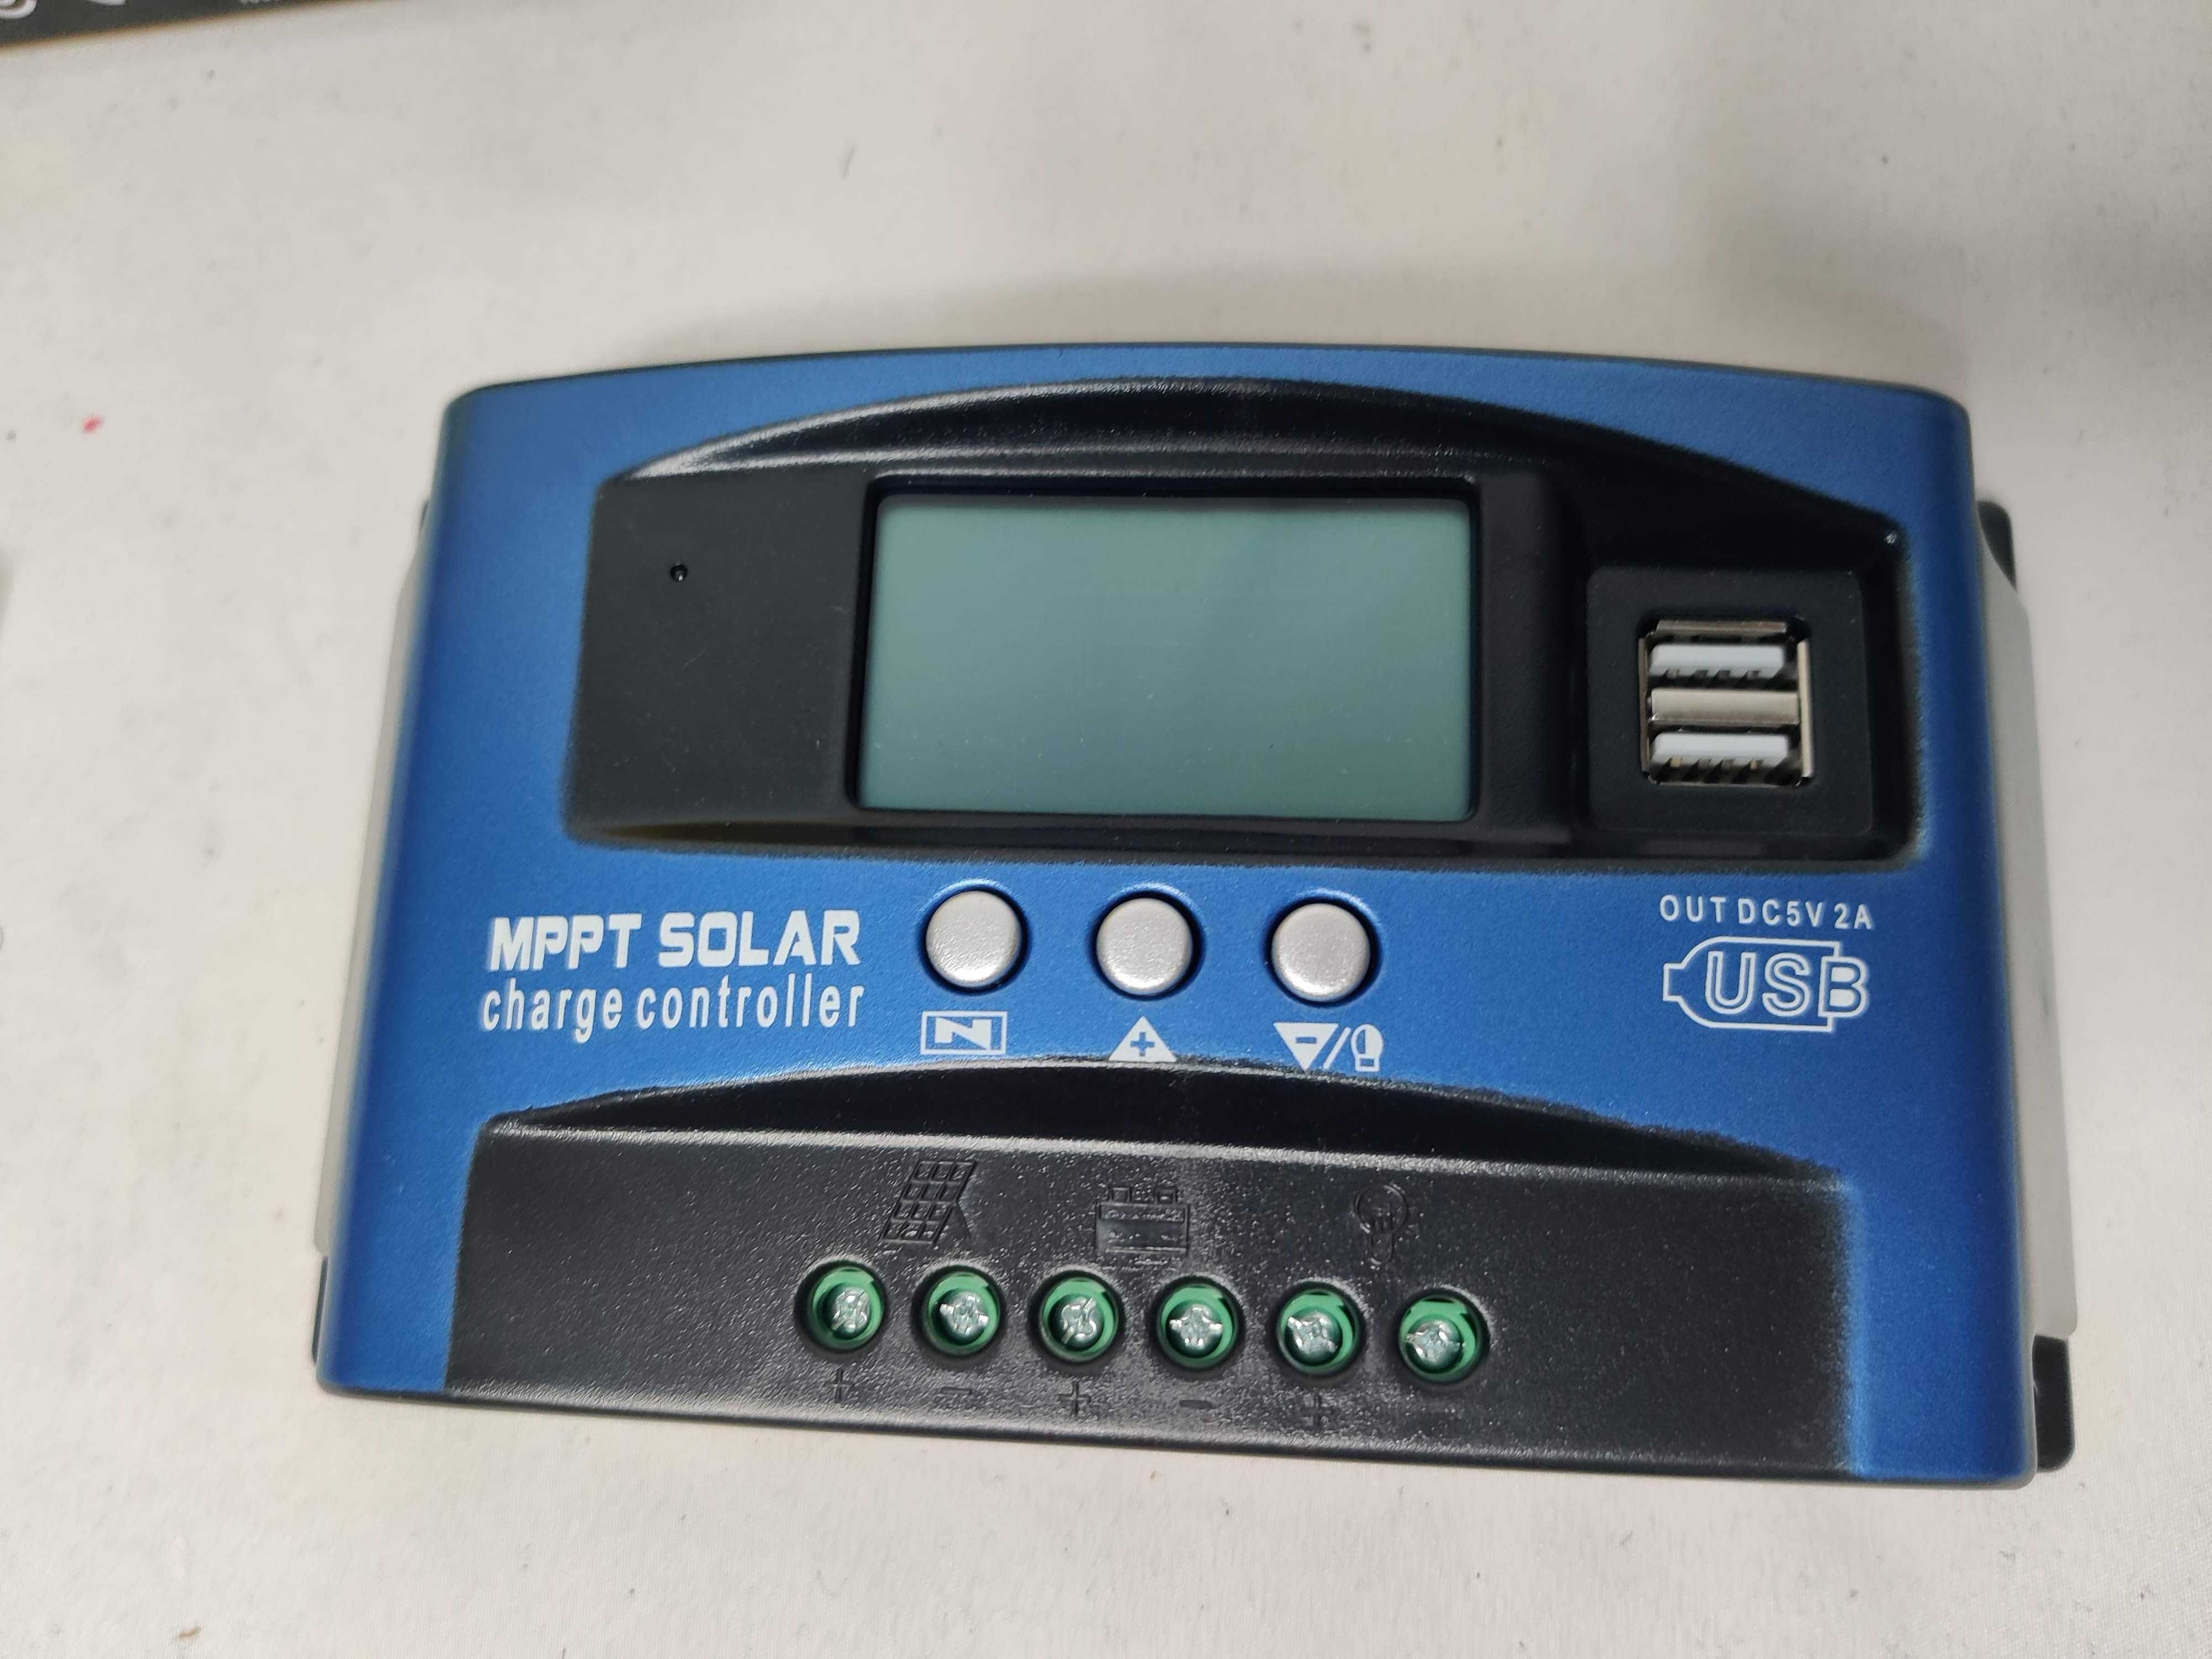 Controlador de Carga Solar MPPT * 30A - 100A * 12V / 24V